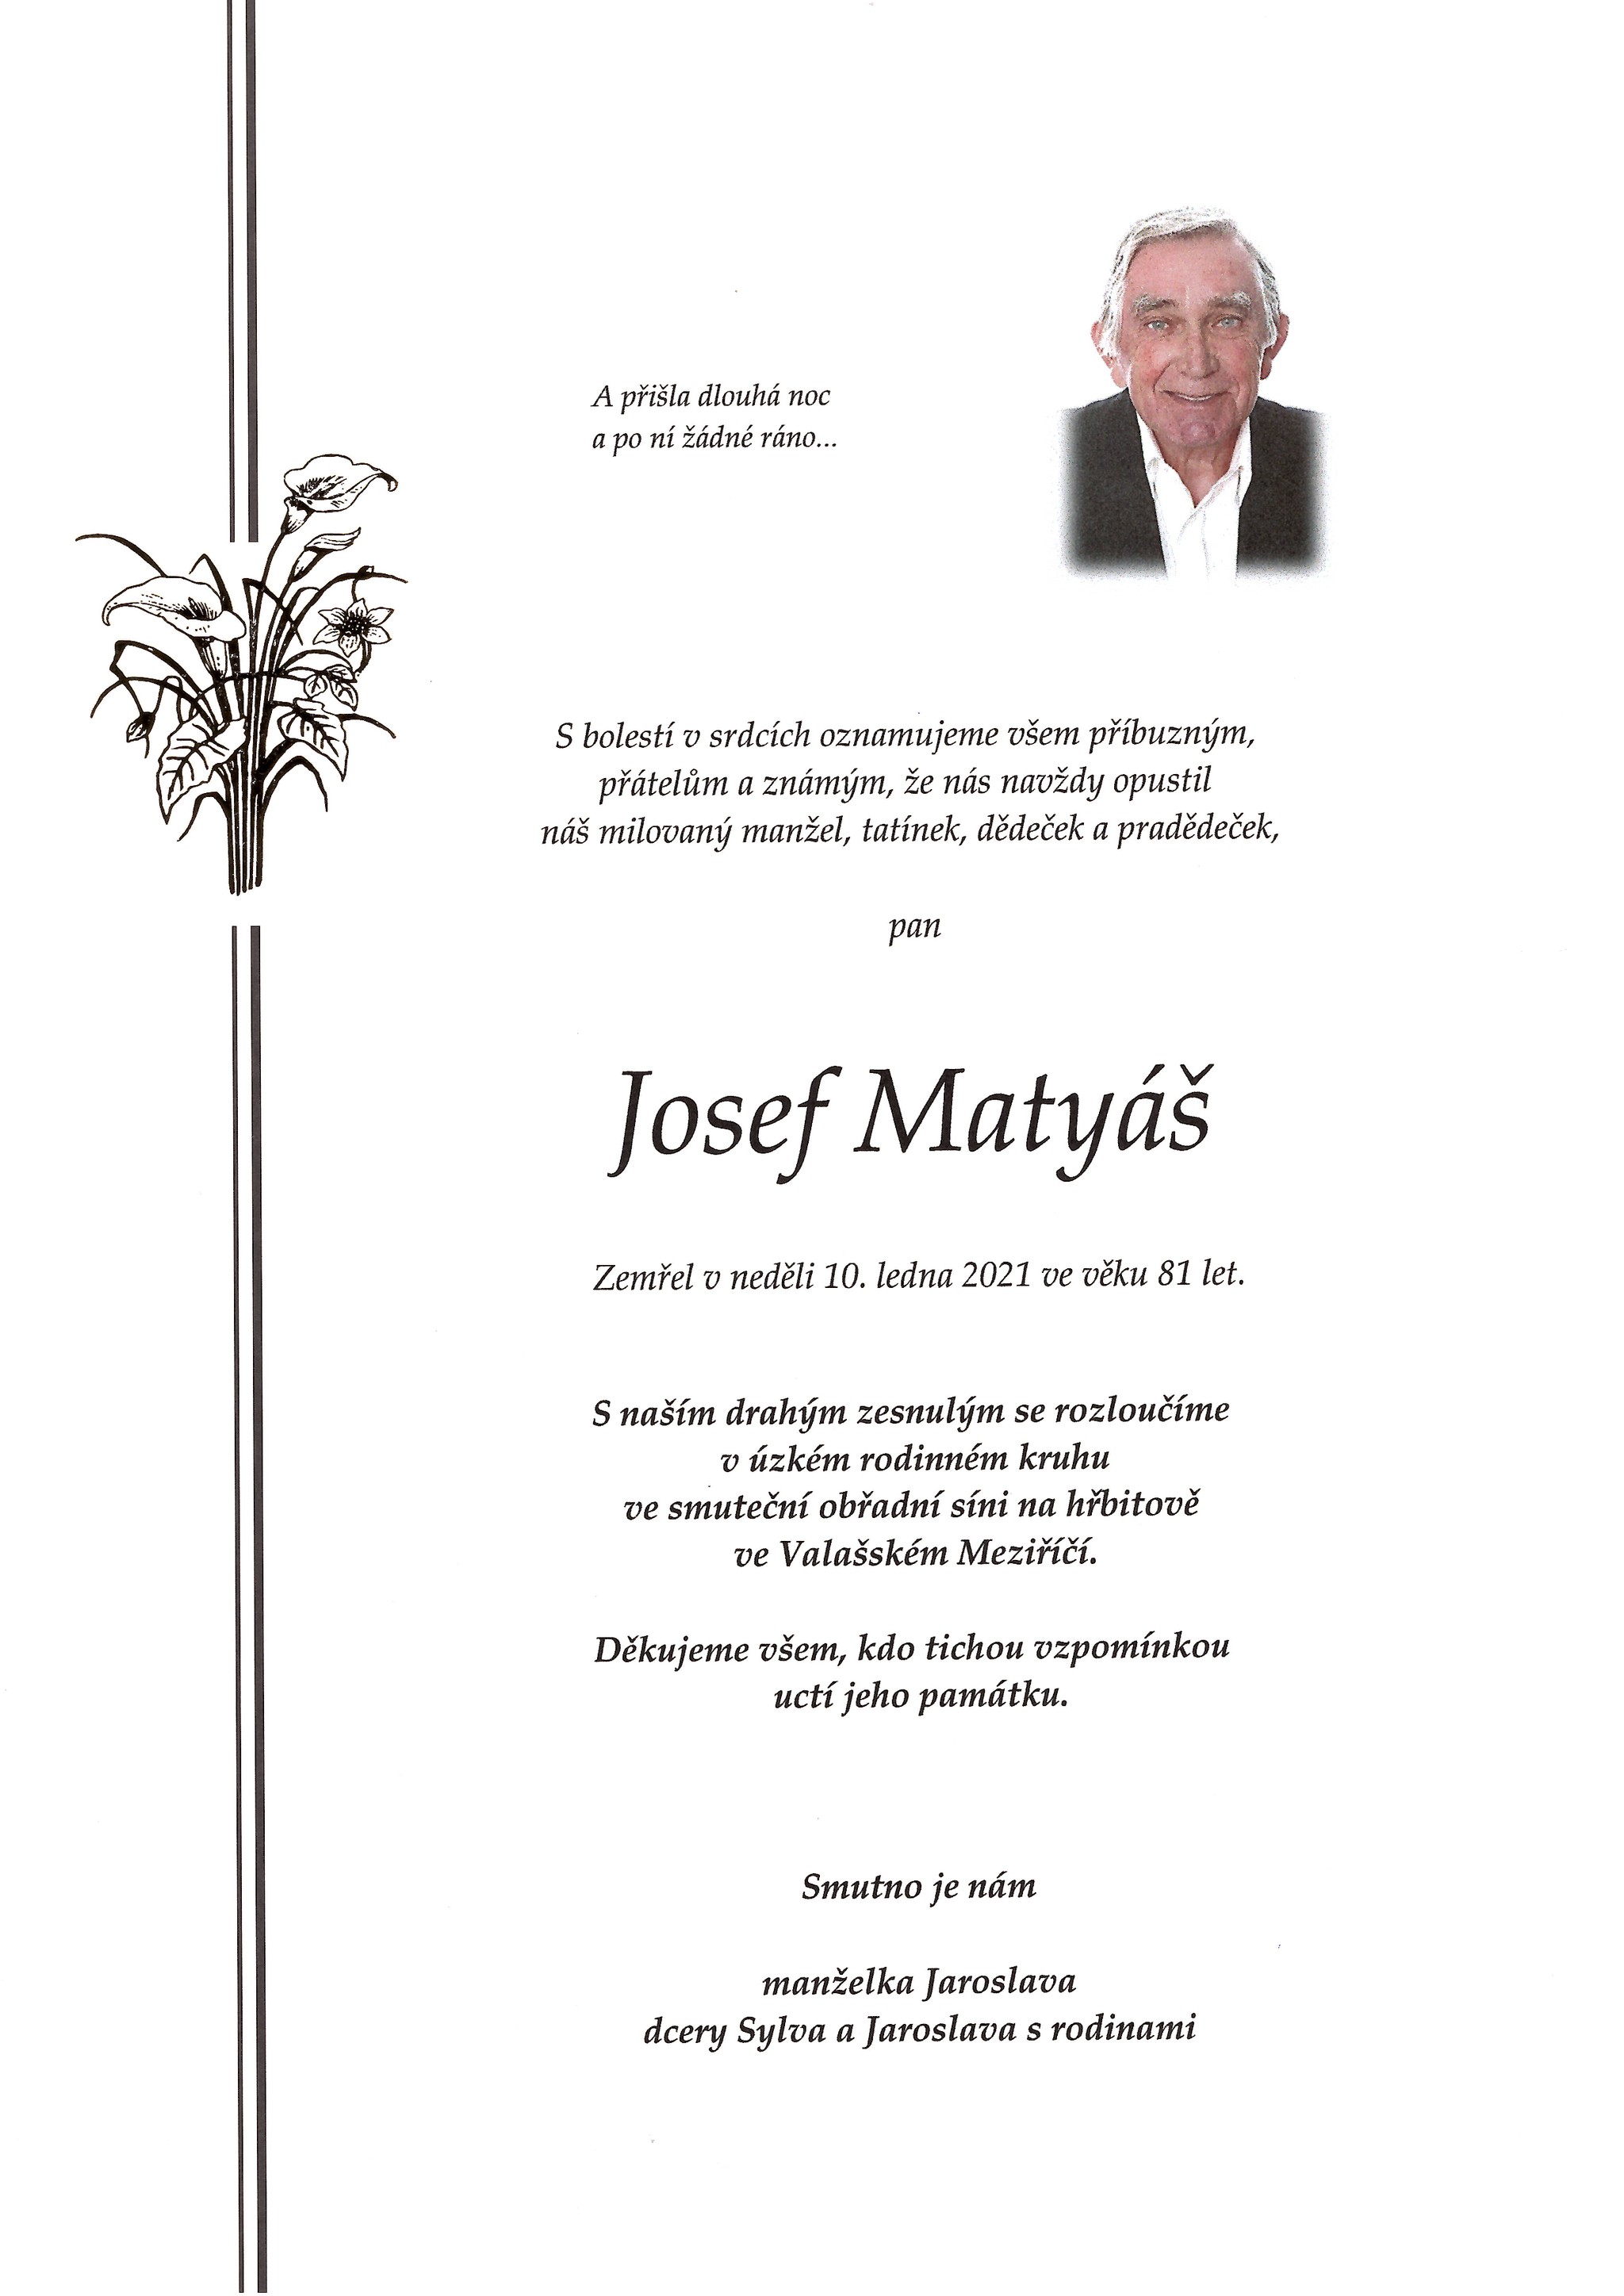 Josef Matyáš